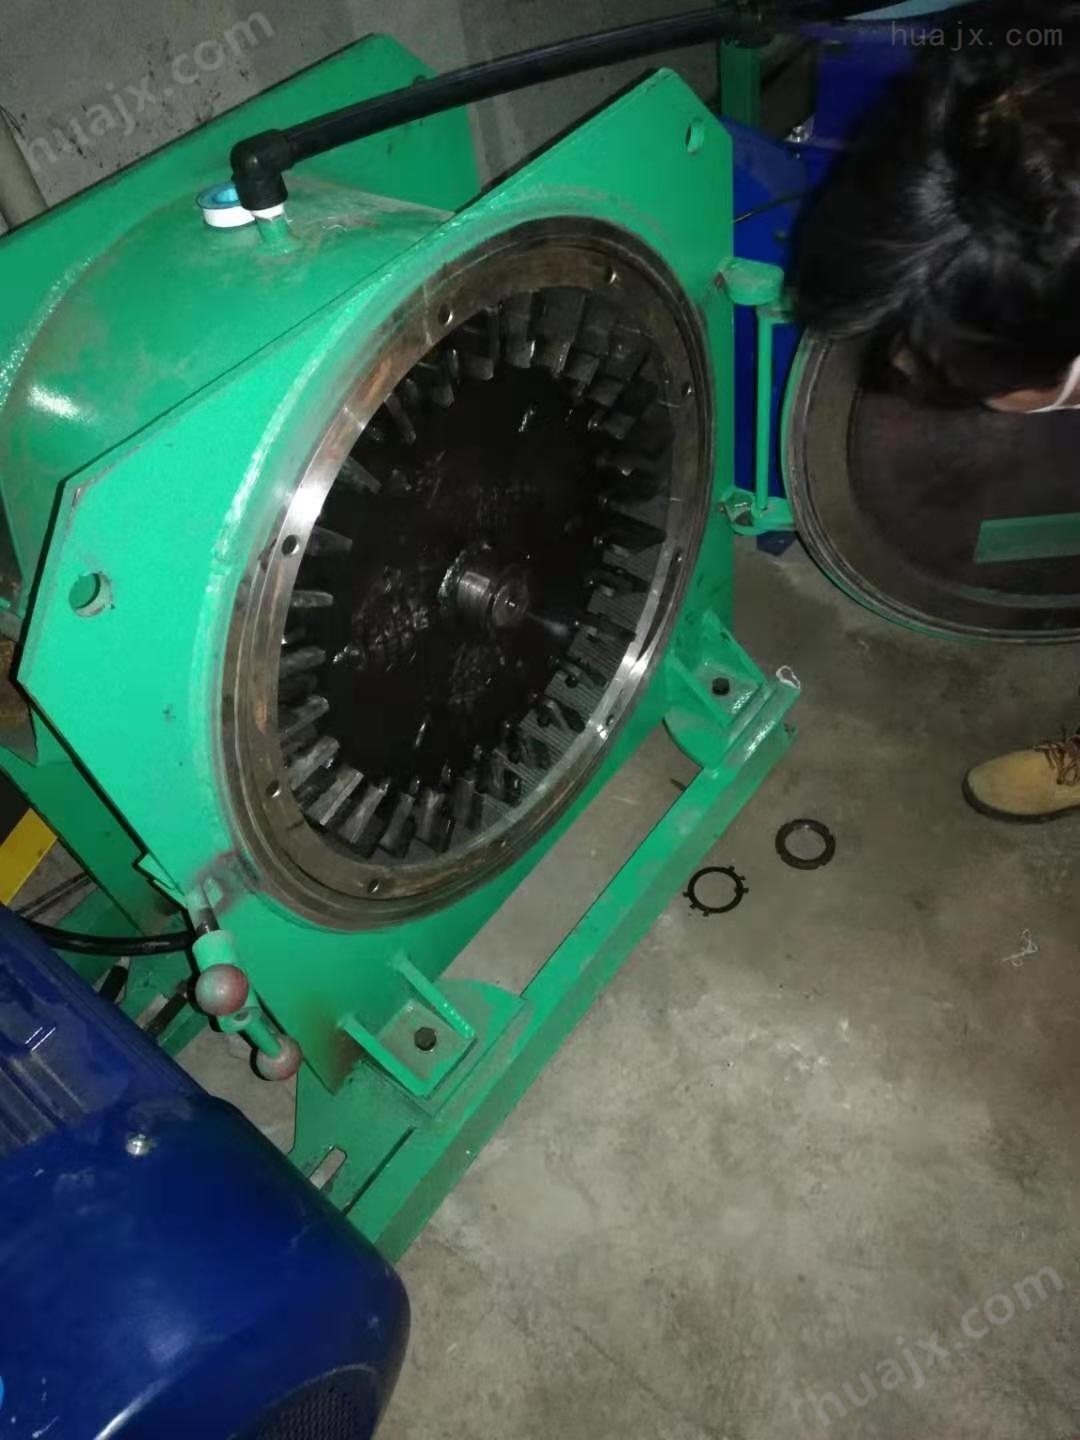 河北智皓供应PVC塑料磨粉机